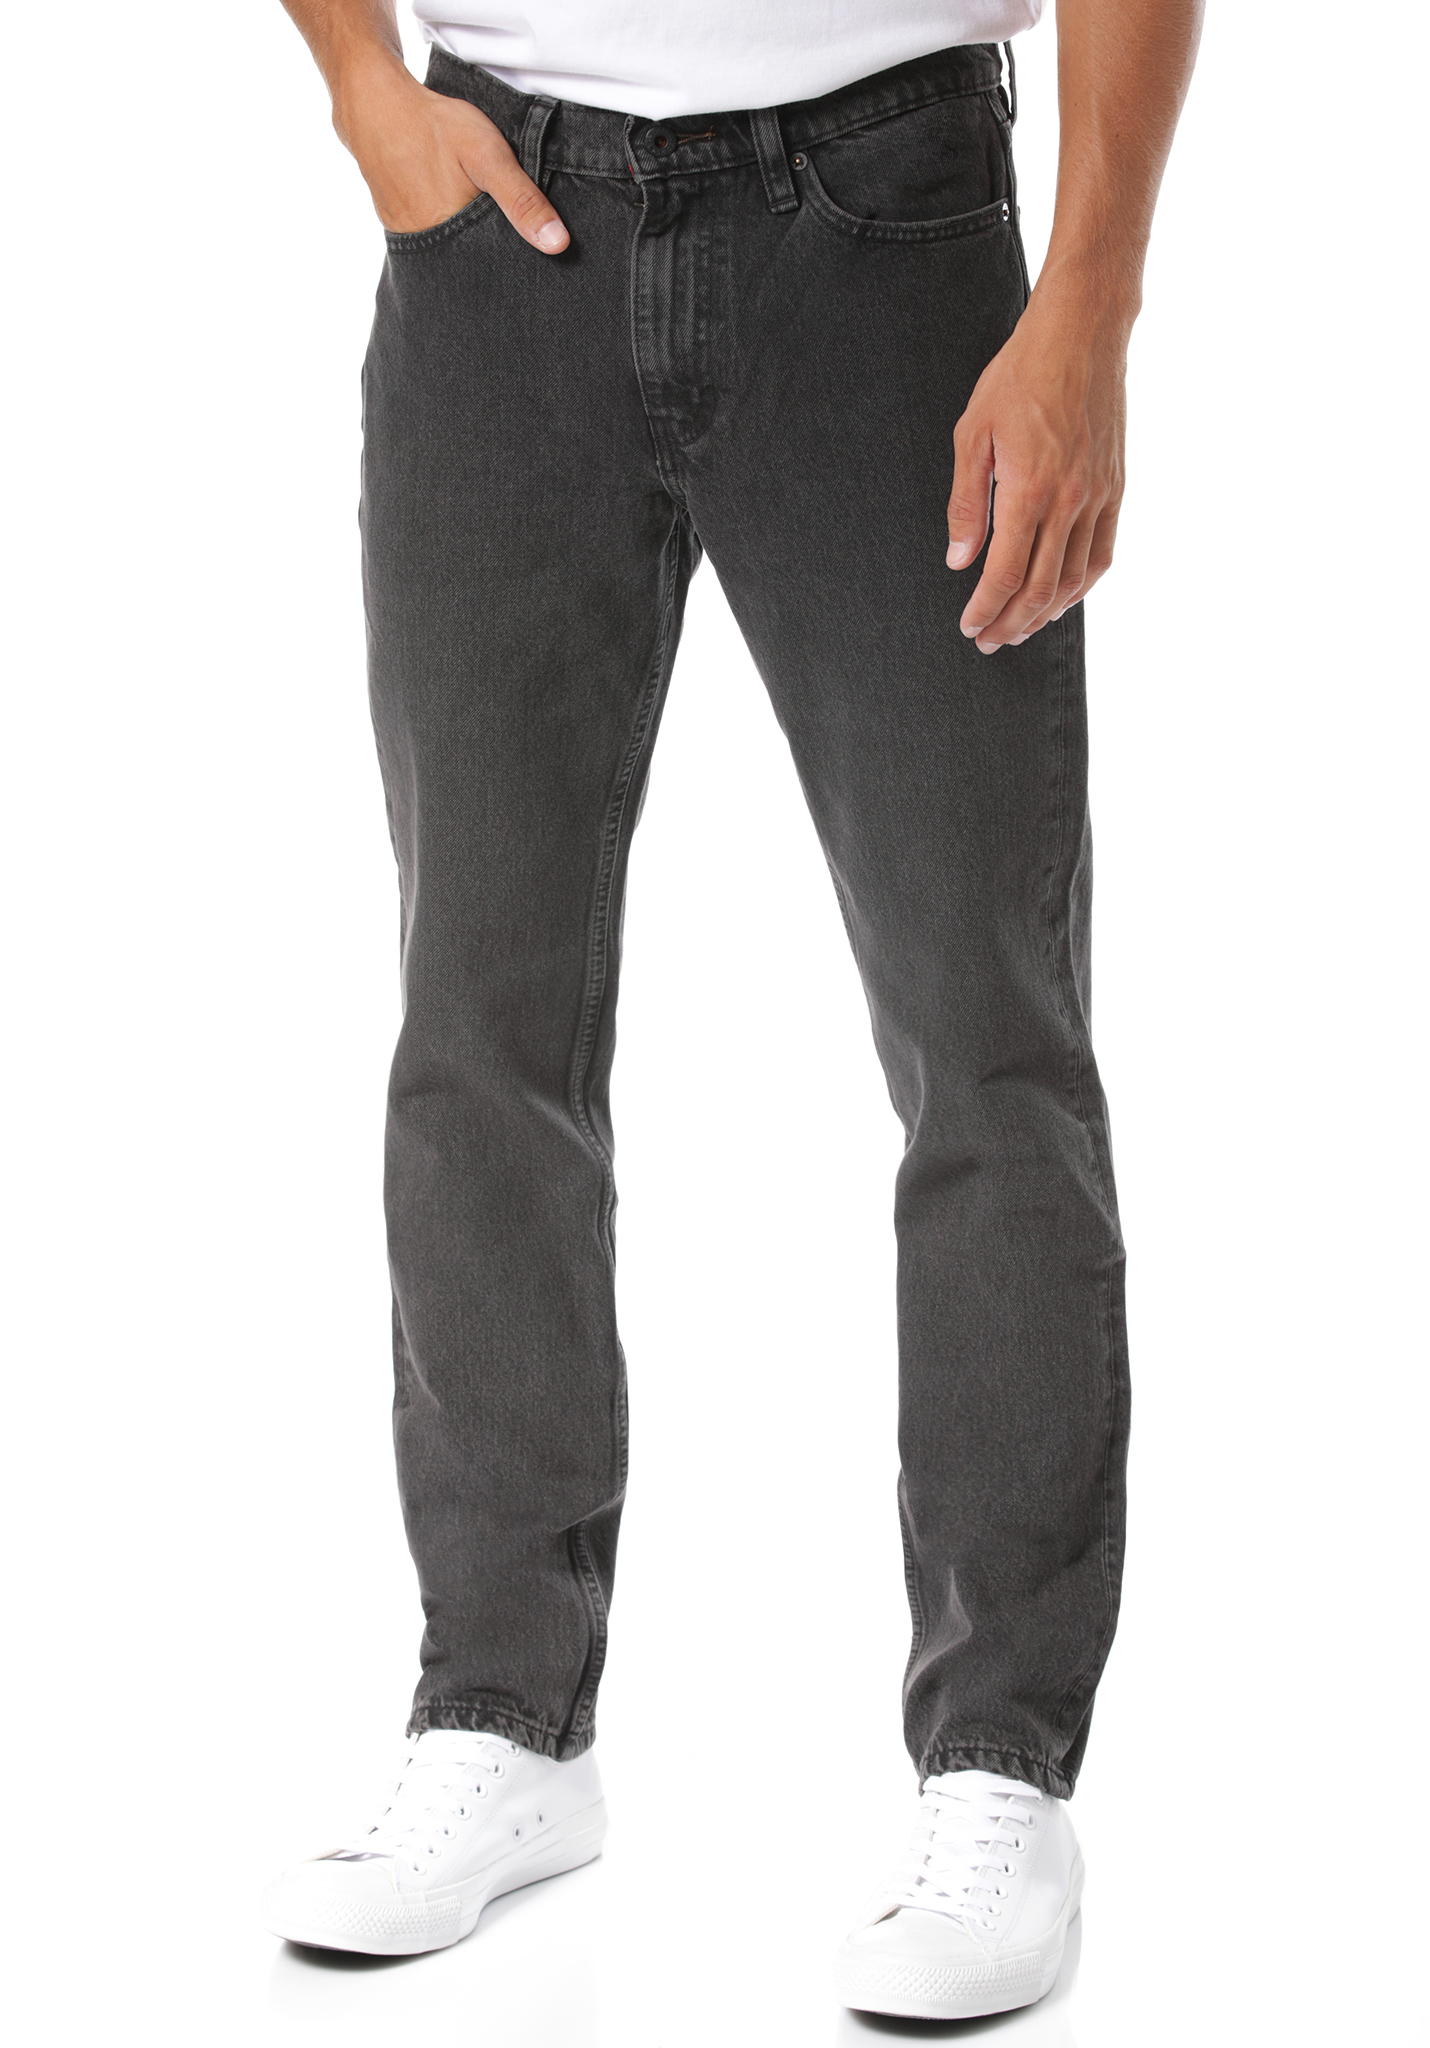 Levis Skate 511 Slim 5 Pocket SE Jeans schwarze 36/34